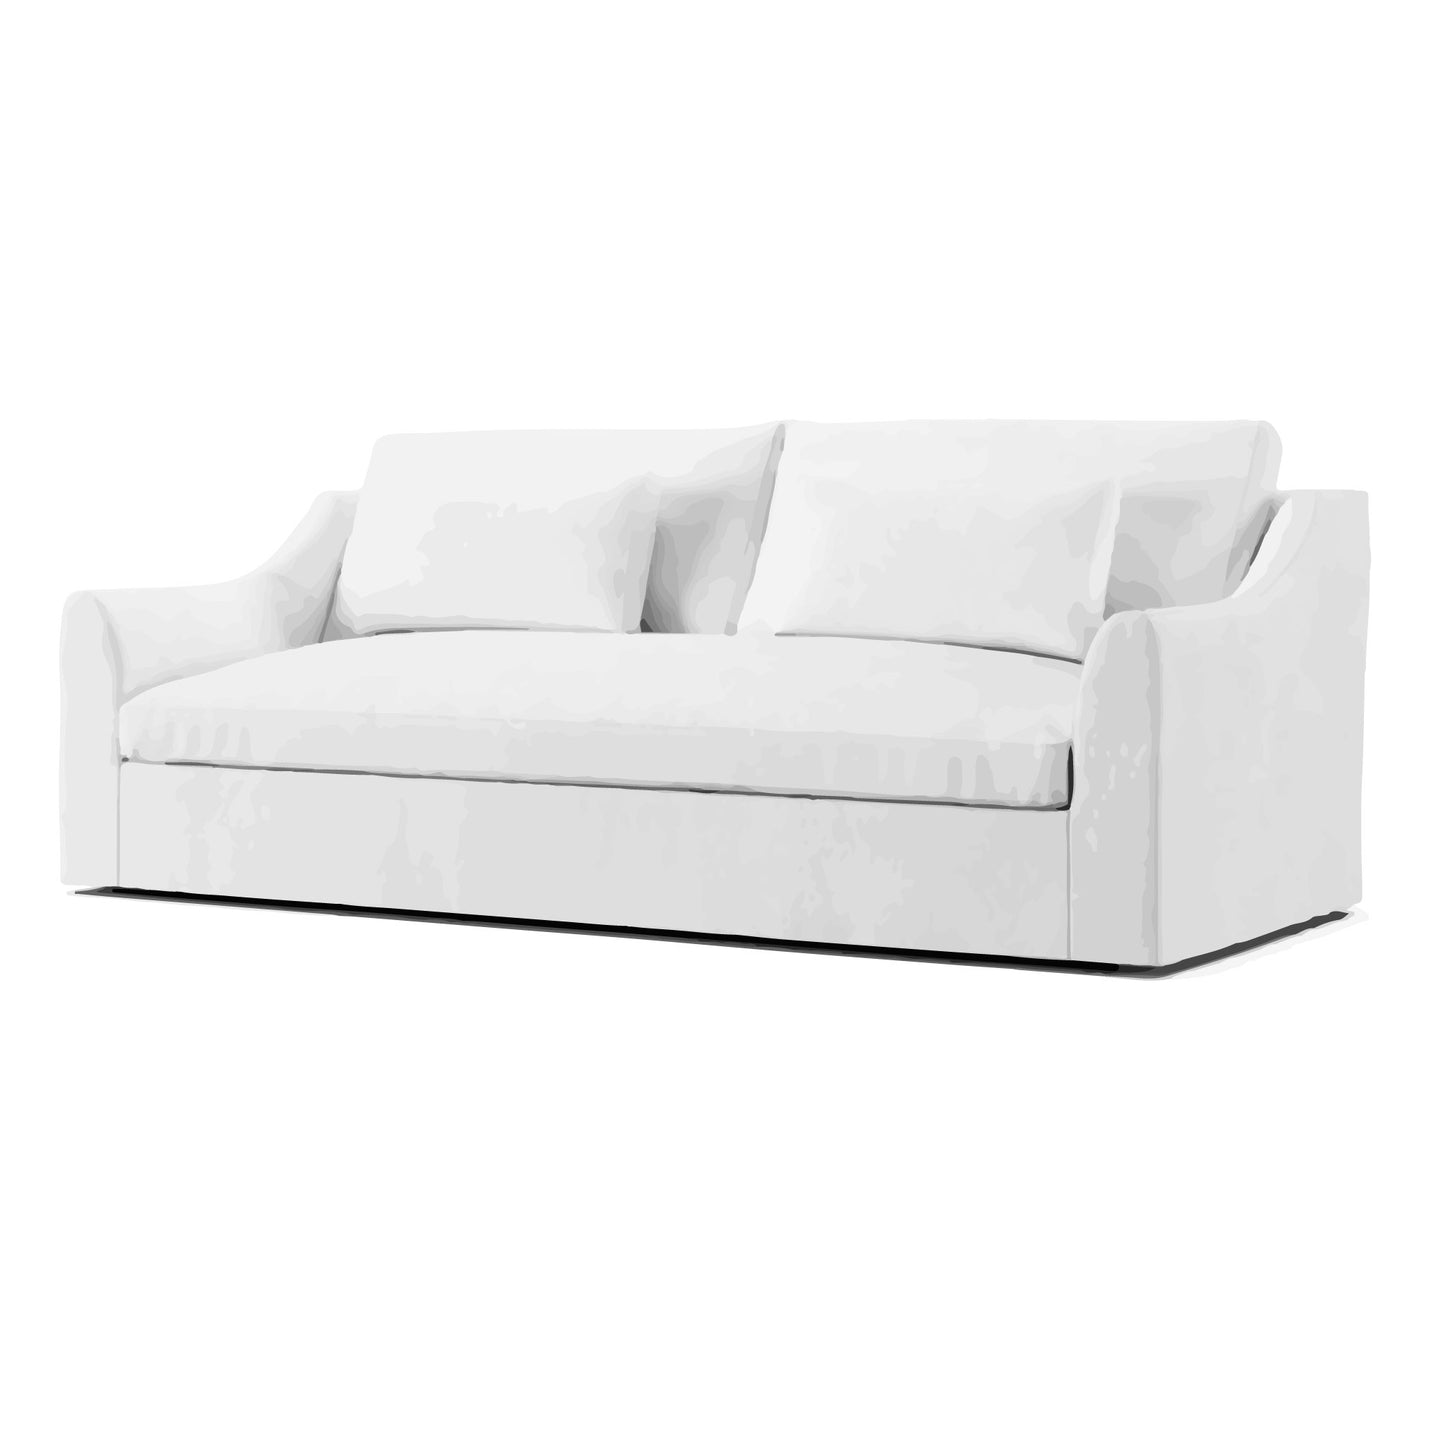 Farlov 3 Seater Sofa Cover